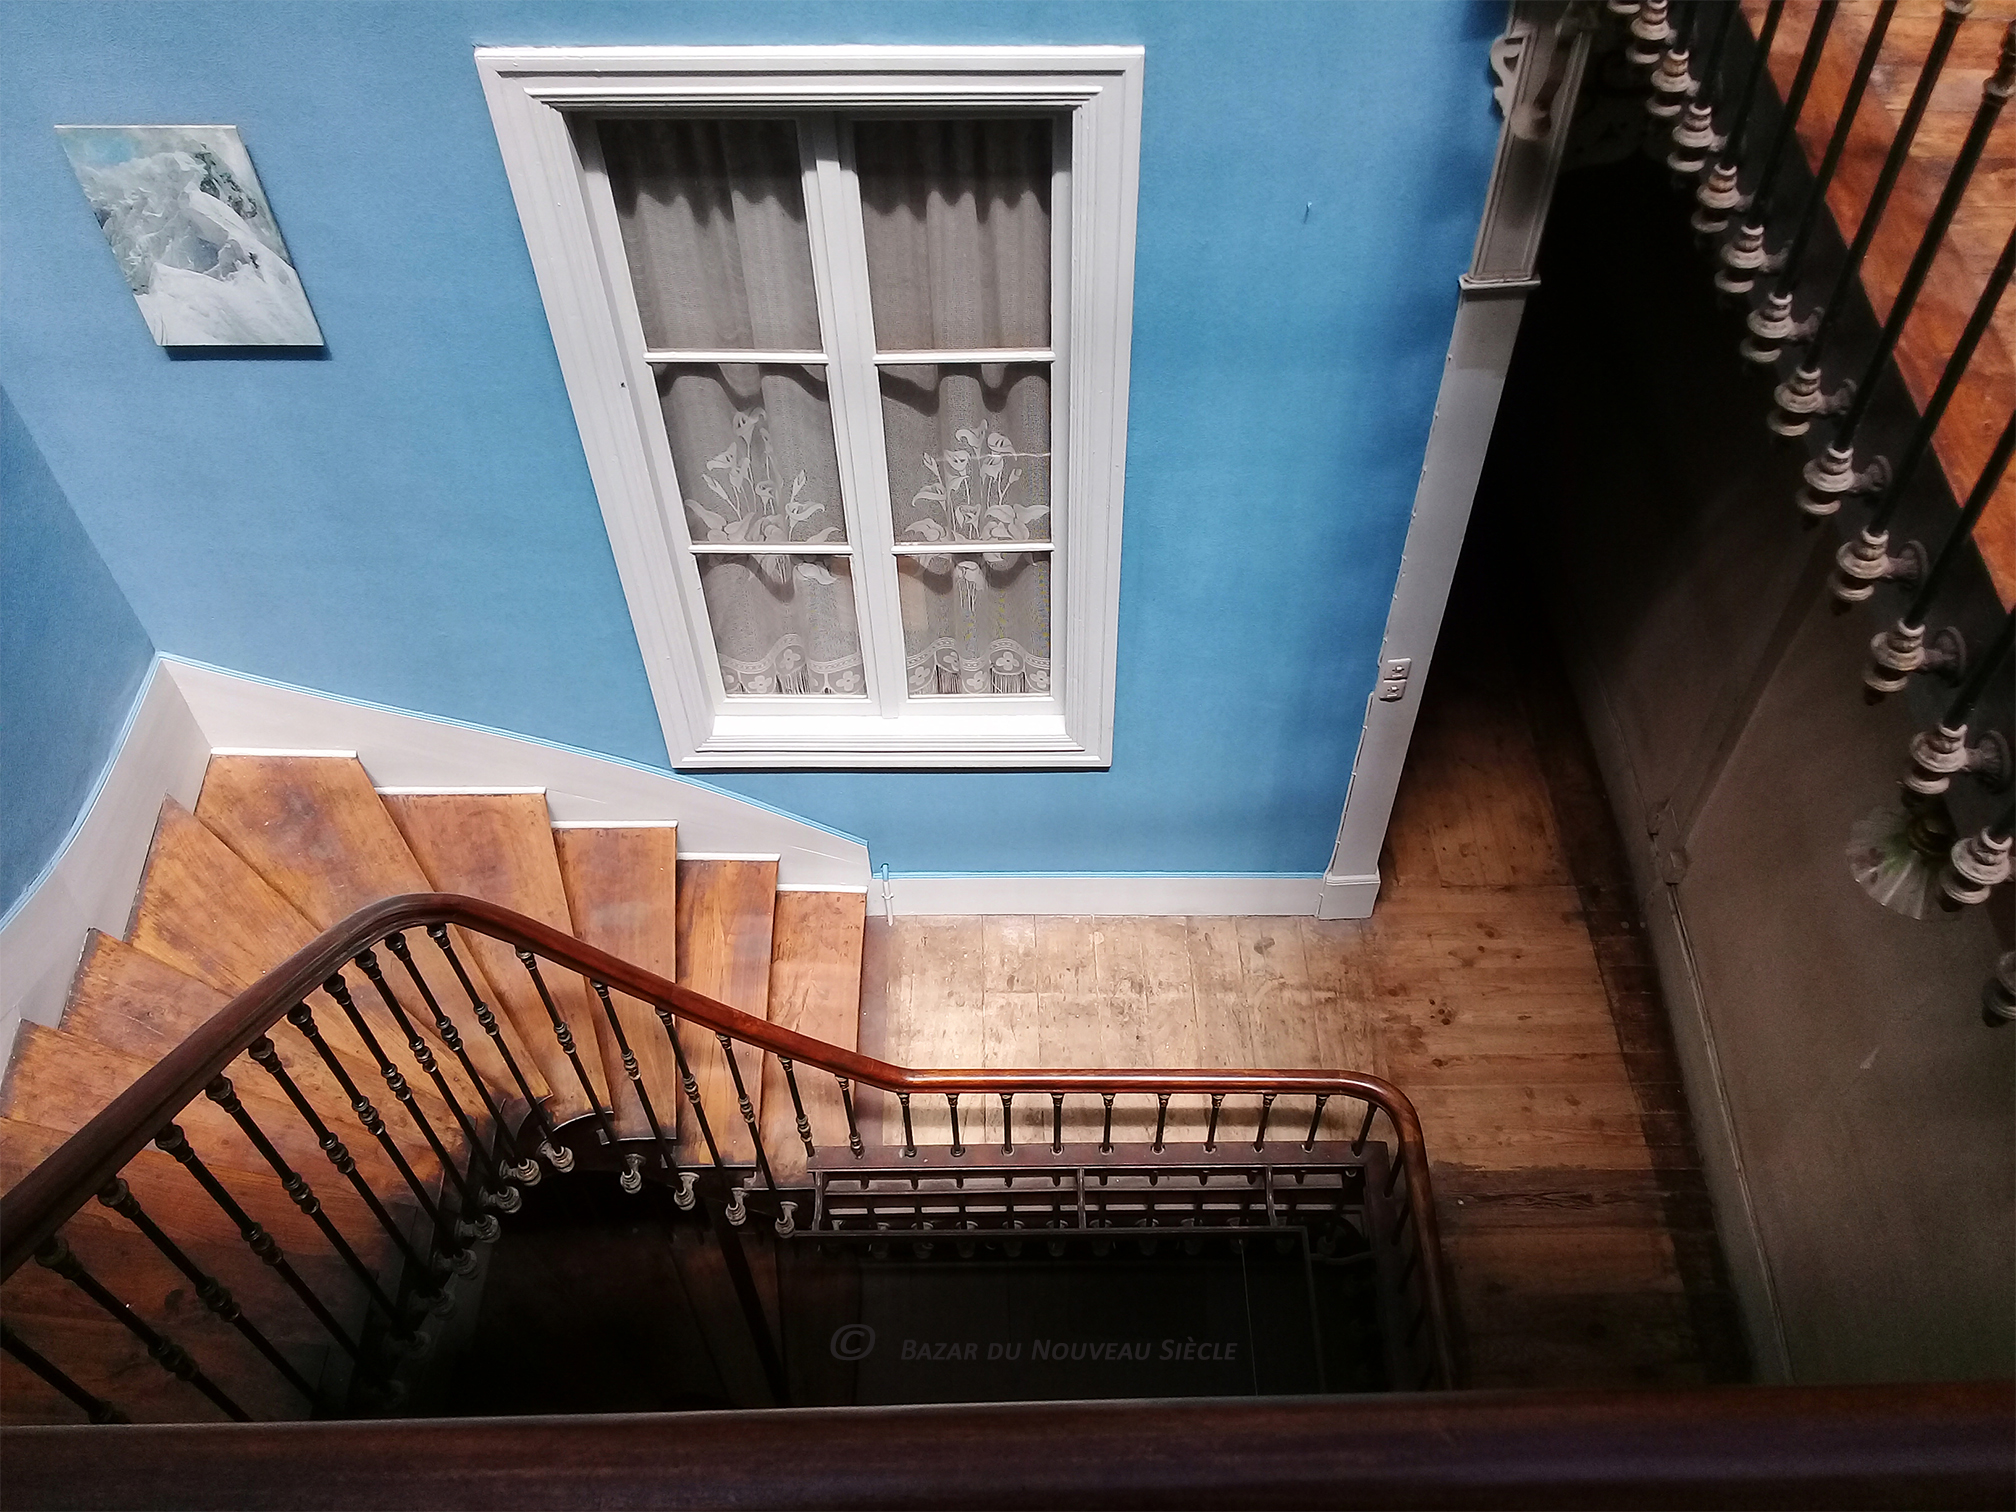 Chambres d'hôtes - Bazar du nouveau siècle - Montréjeau Escalier A (©) (2) 